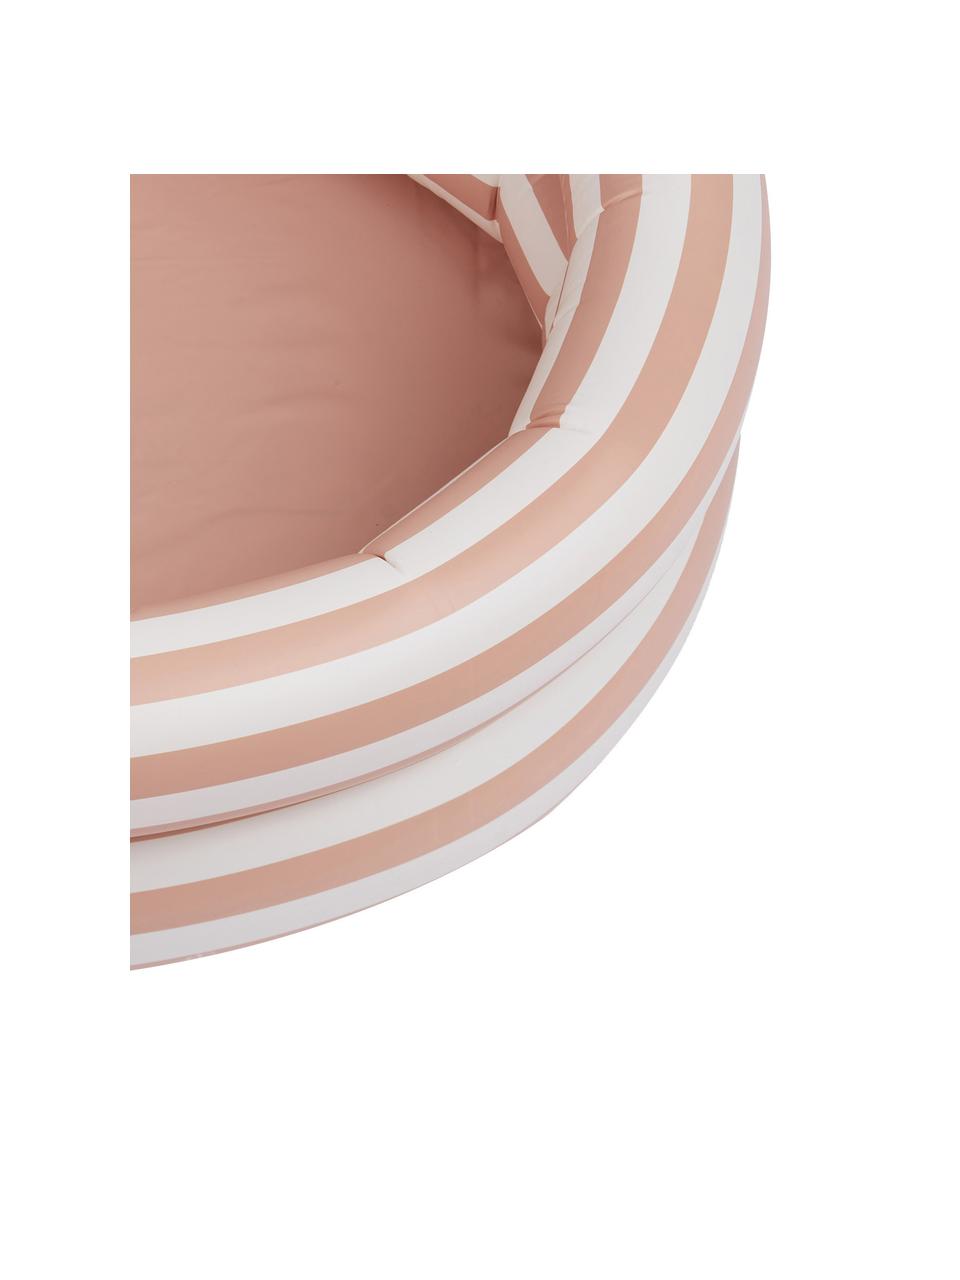 Brouzdaliště Leonore, Umělá hmota (PCV), Růžová, bílá, Ø 80 cm, V 20 cm